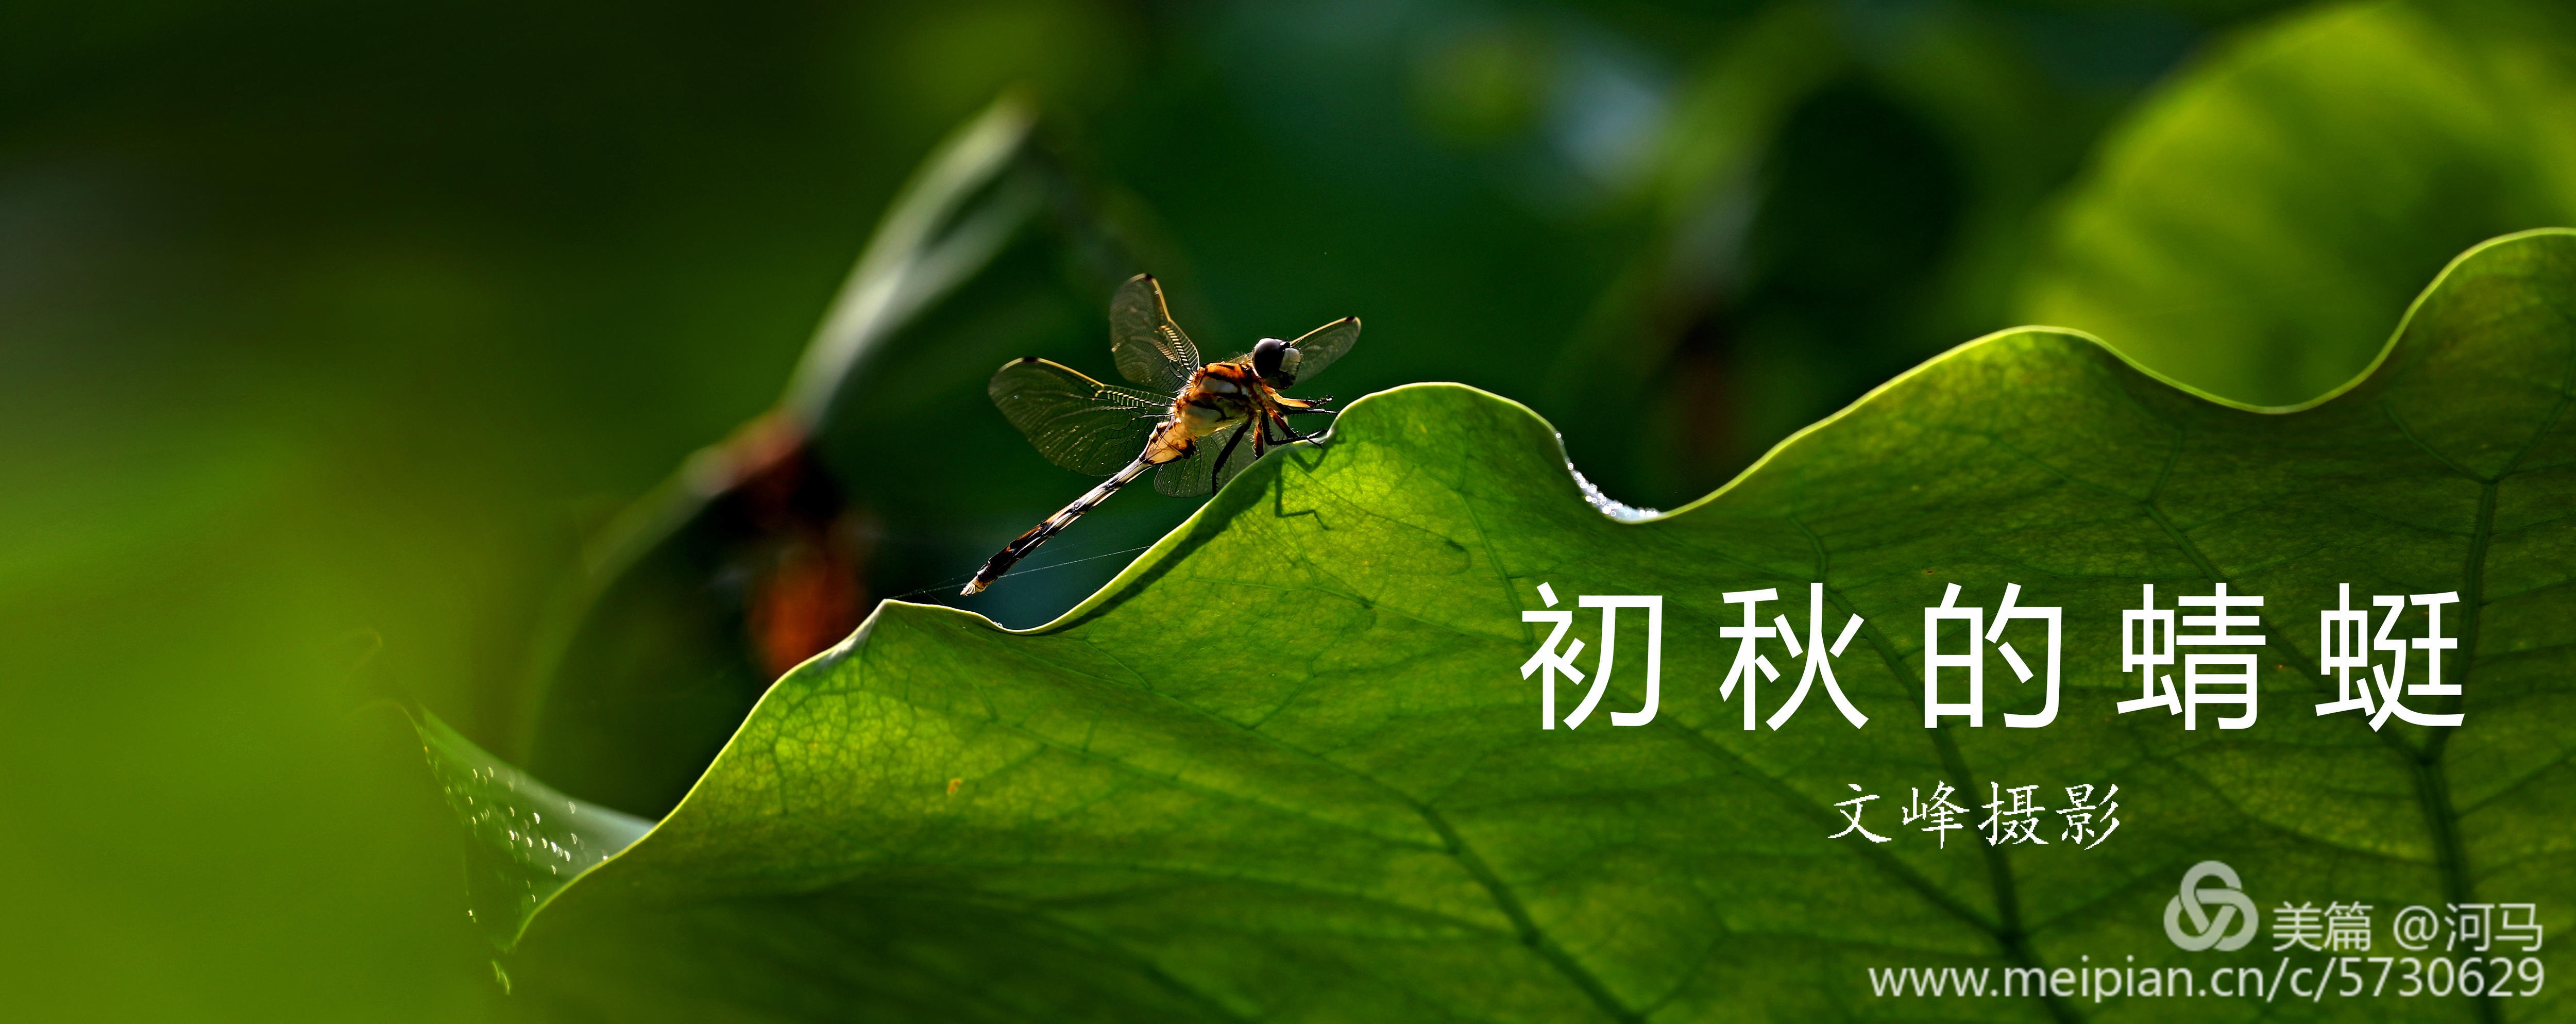 初秋的蜻蜓 文峰 摄影